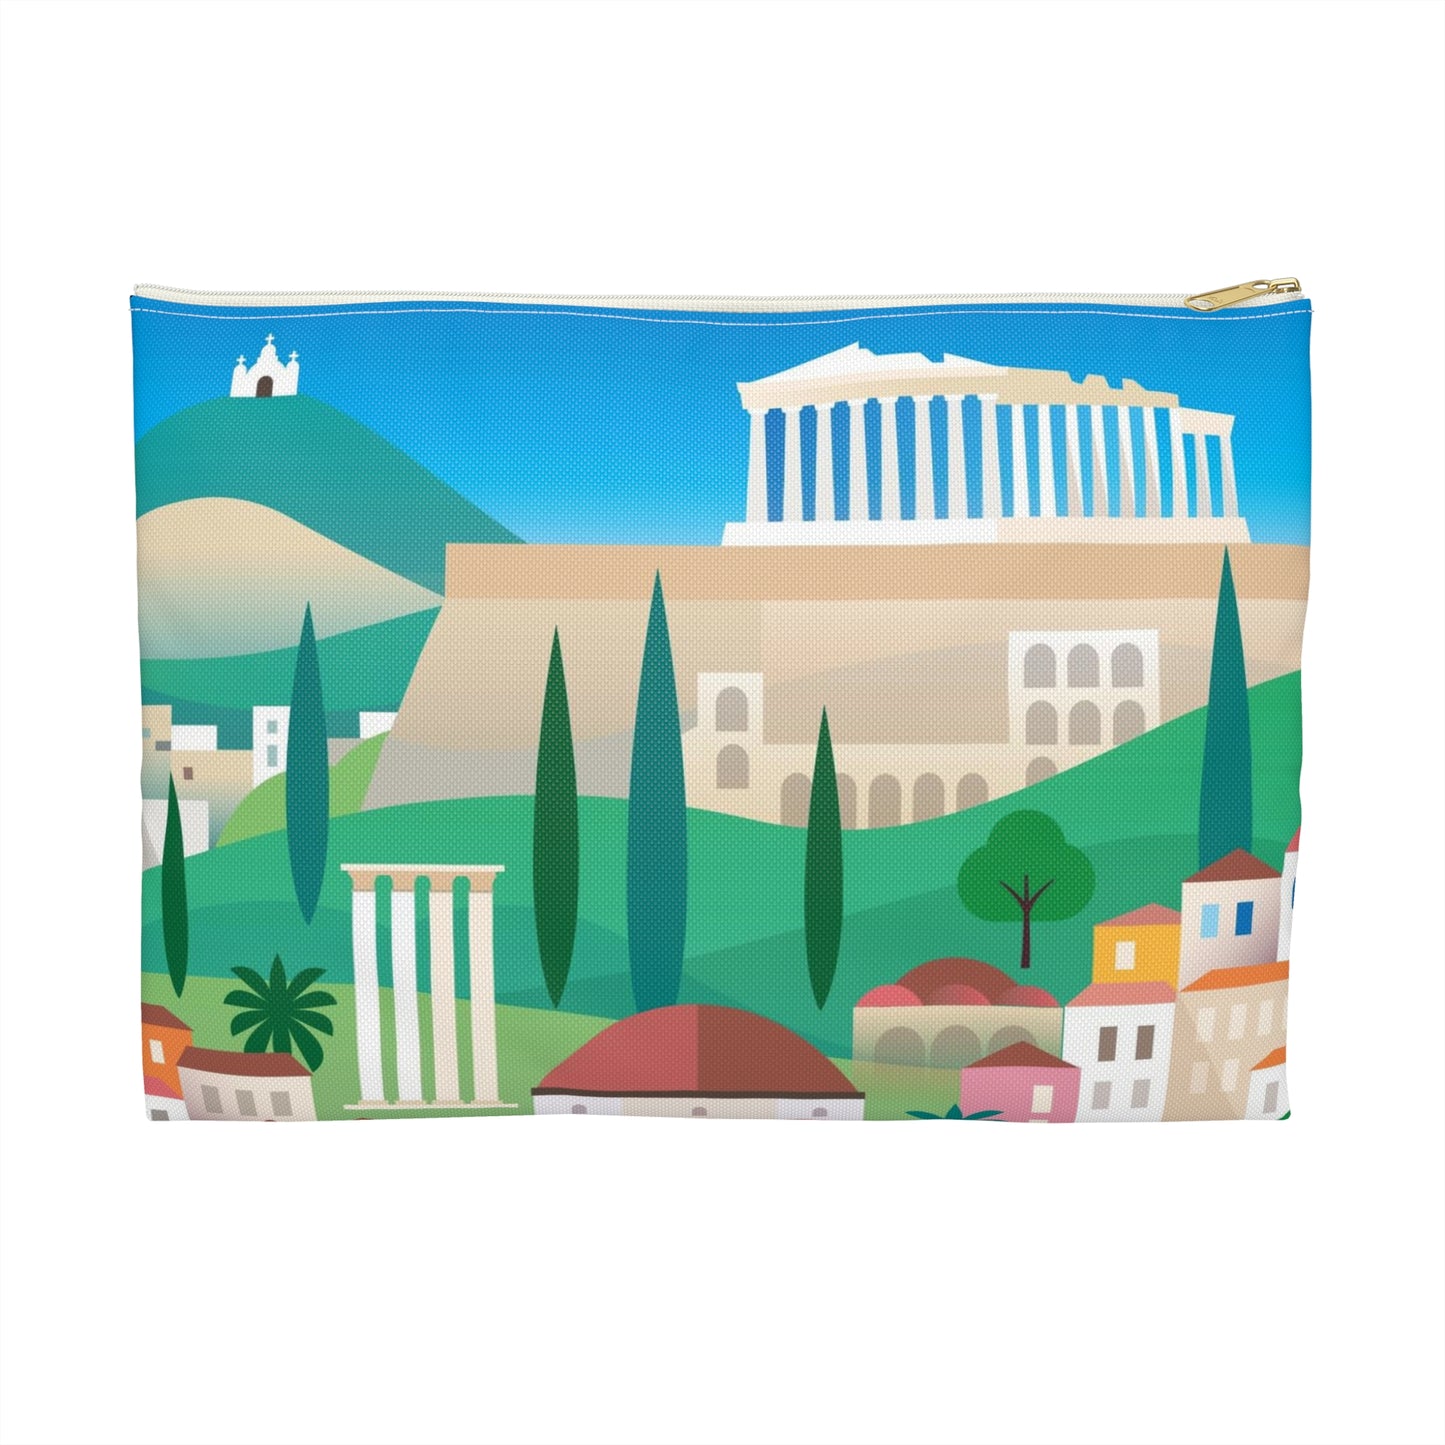 Pochette zippée Athènes